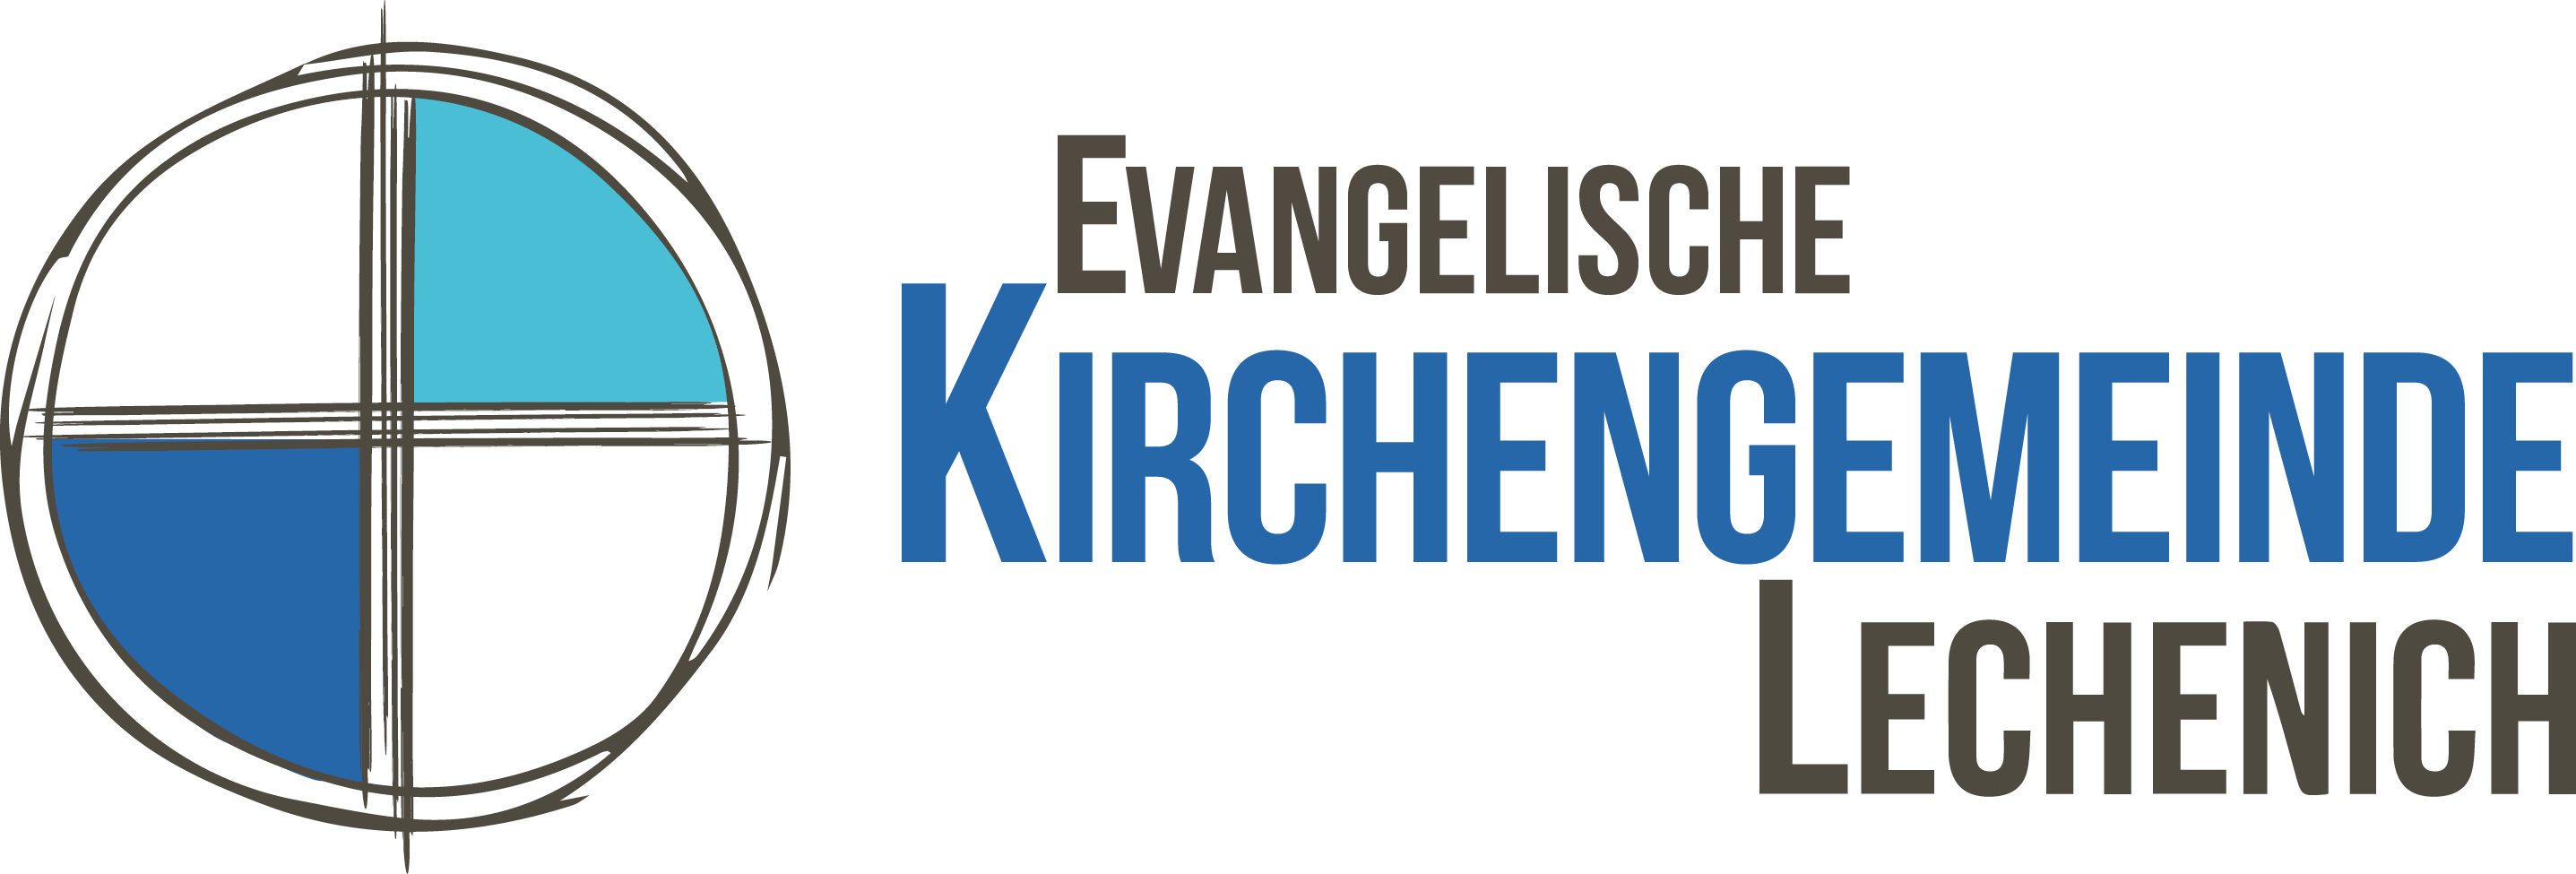 Evangelische Kirchengemeinde Lechenich